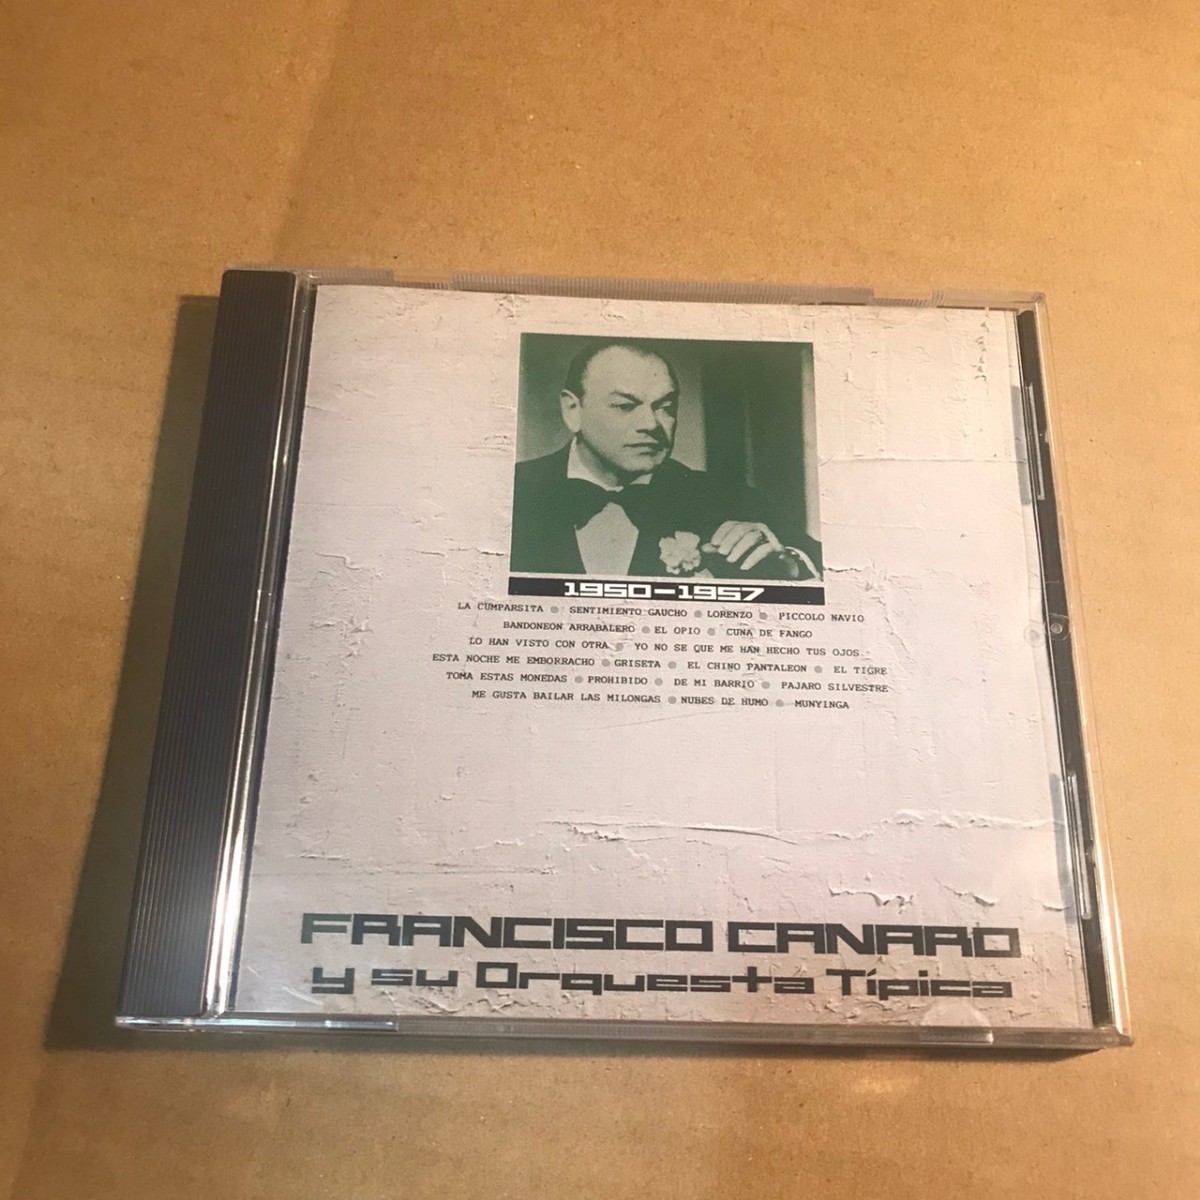  francisco canaro y su orquesta CD タンゴ tango 1950-1957_画像1